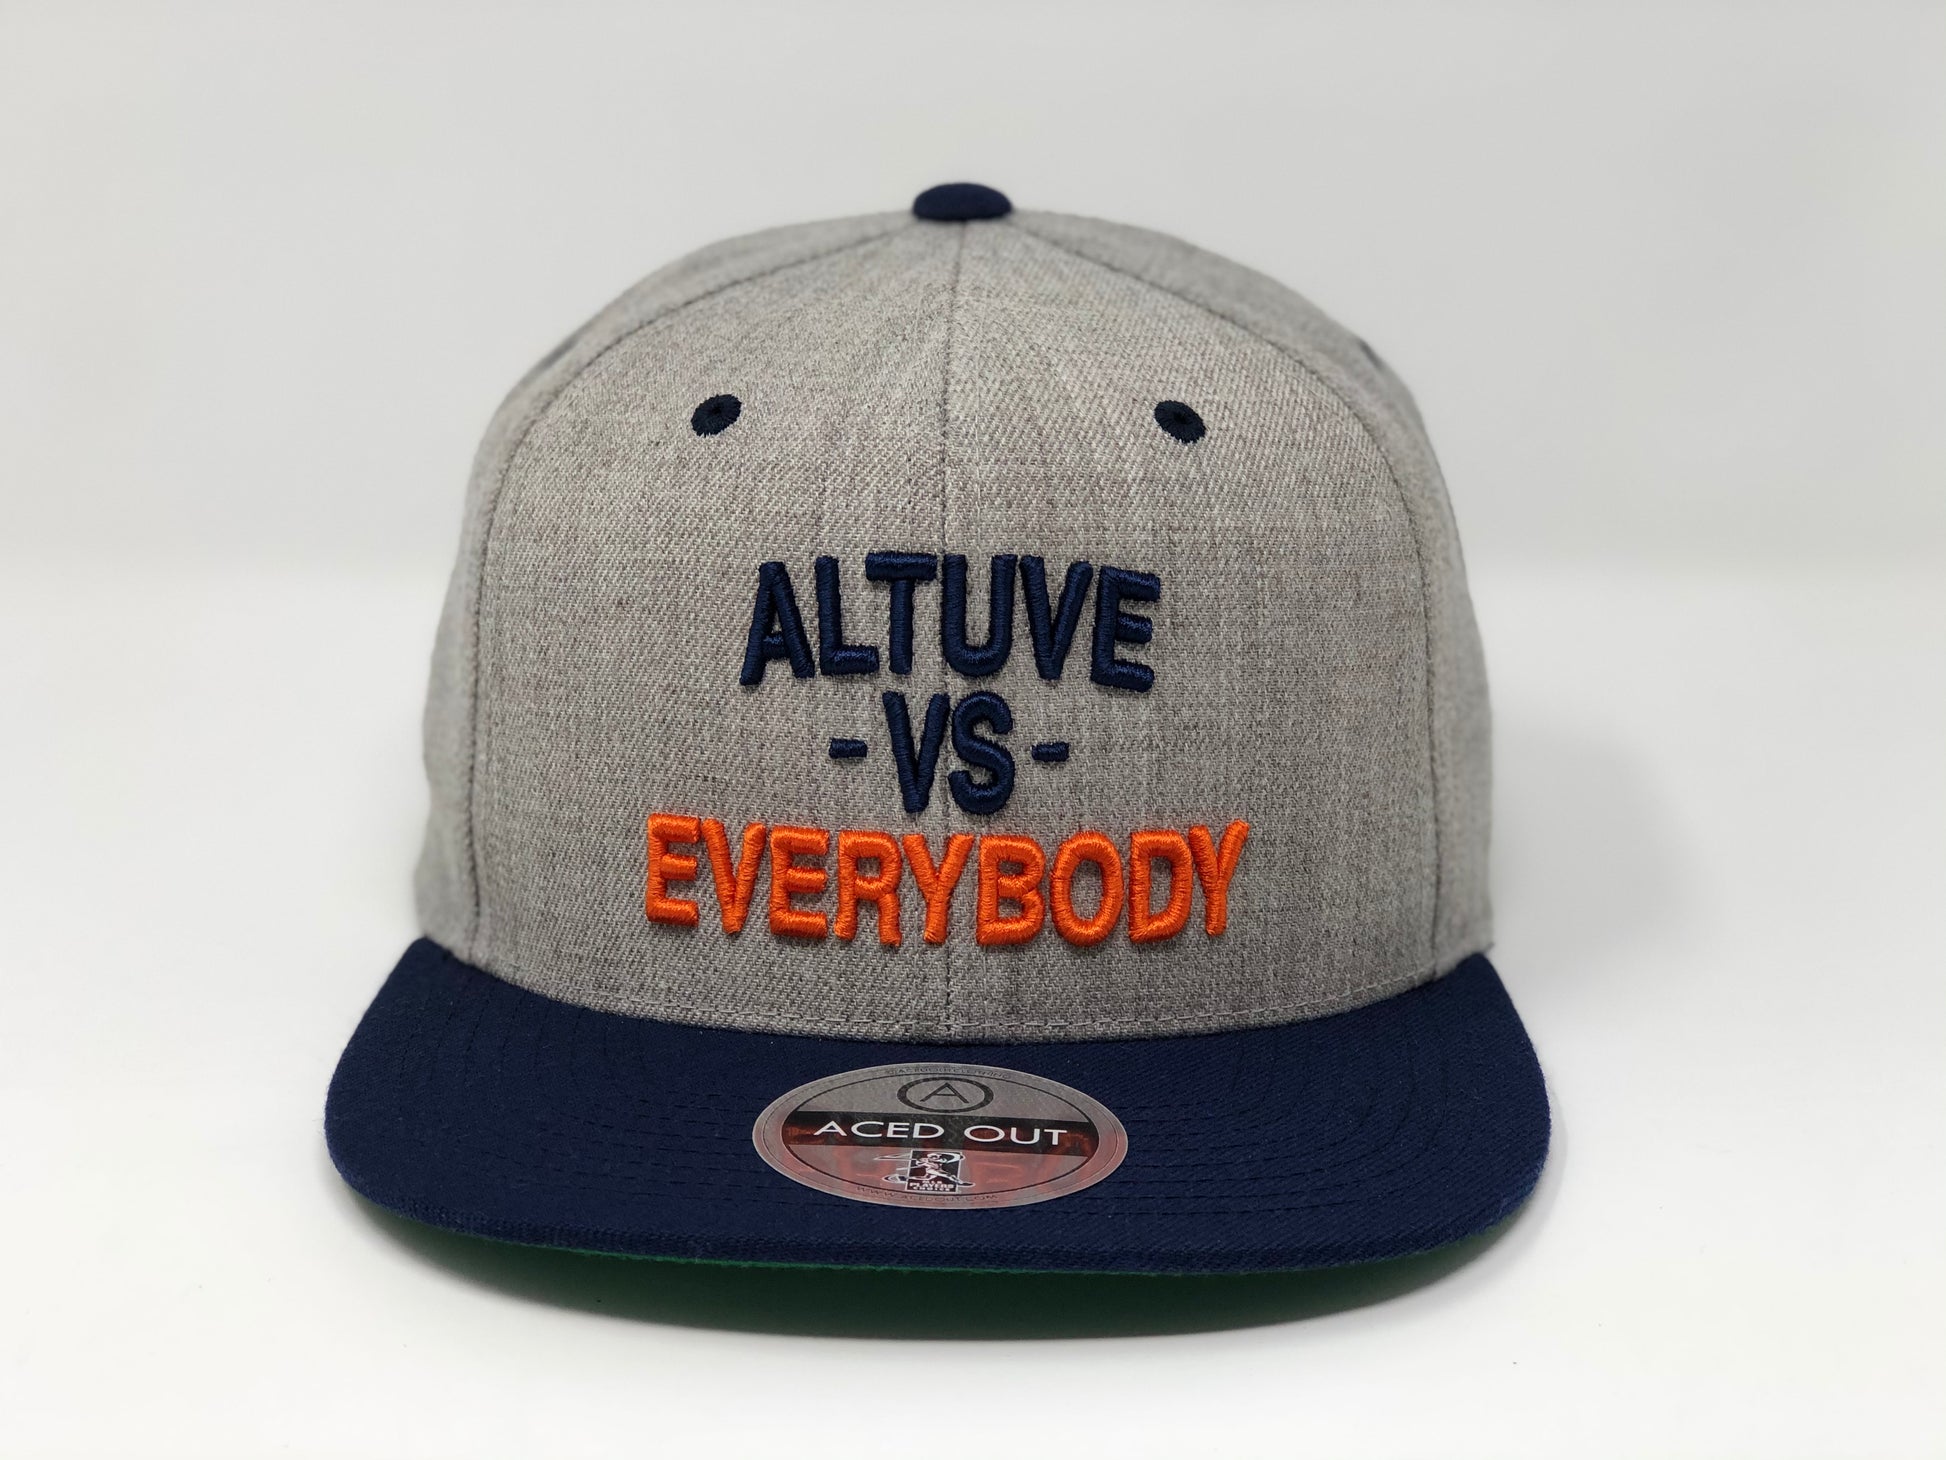 Jose Altuve Vs Everybody Hat - Grey/Navy Snapback